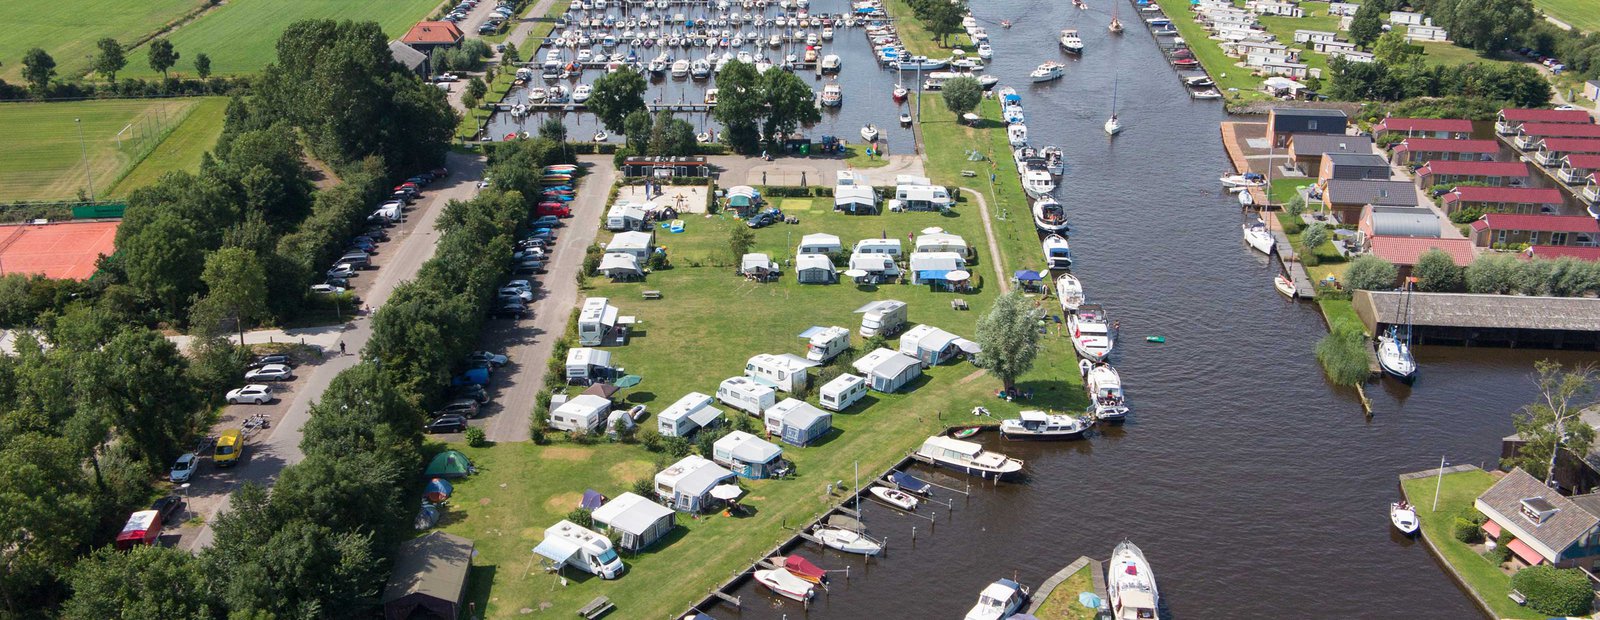 luchtfoto van jachthaven friesland met verkoophaven en camping